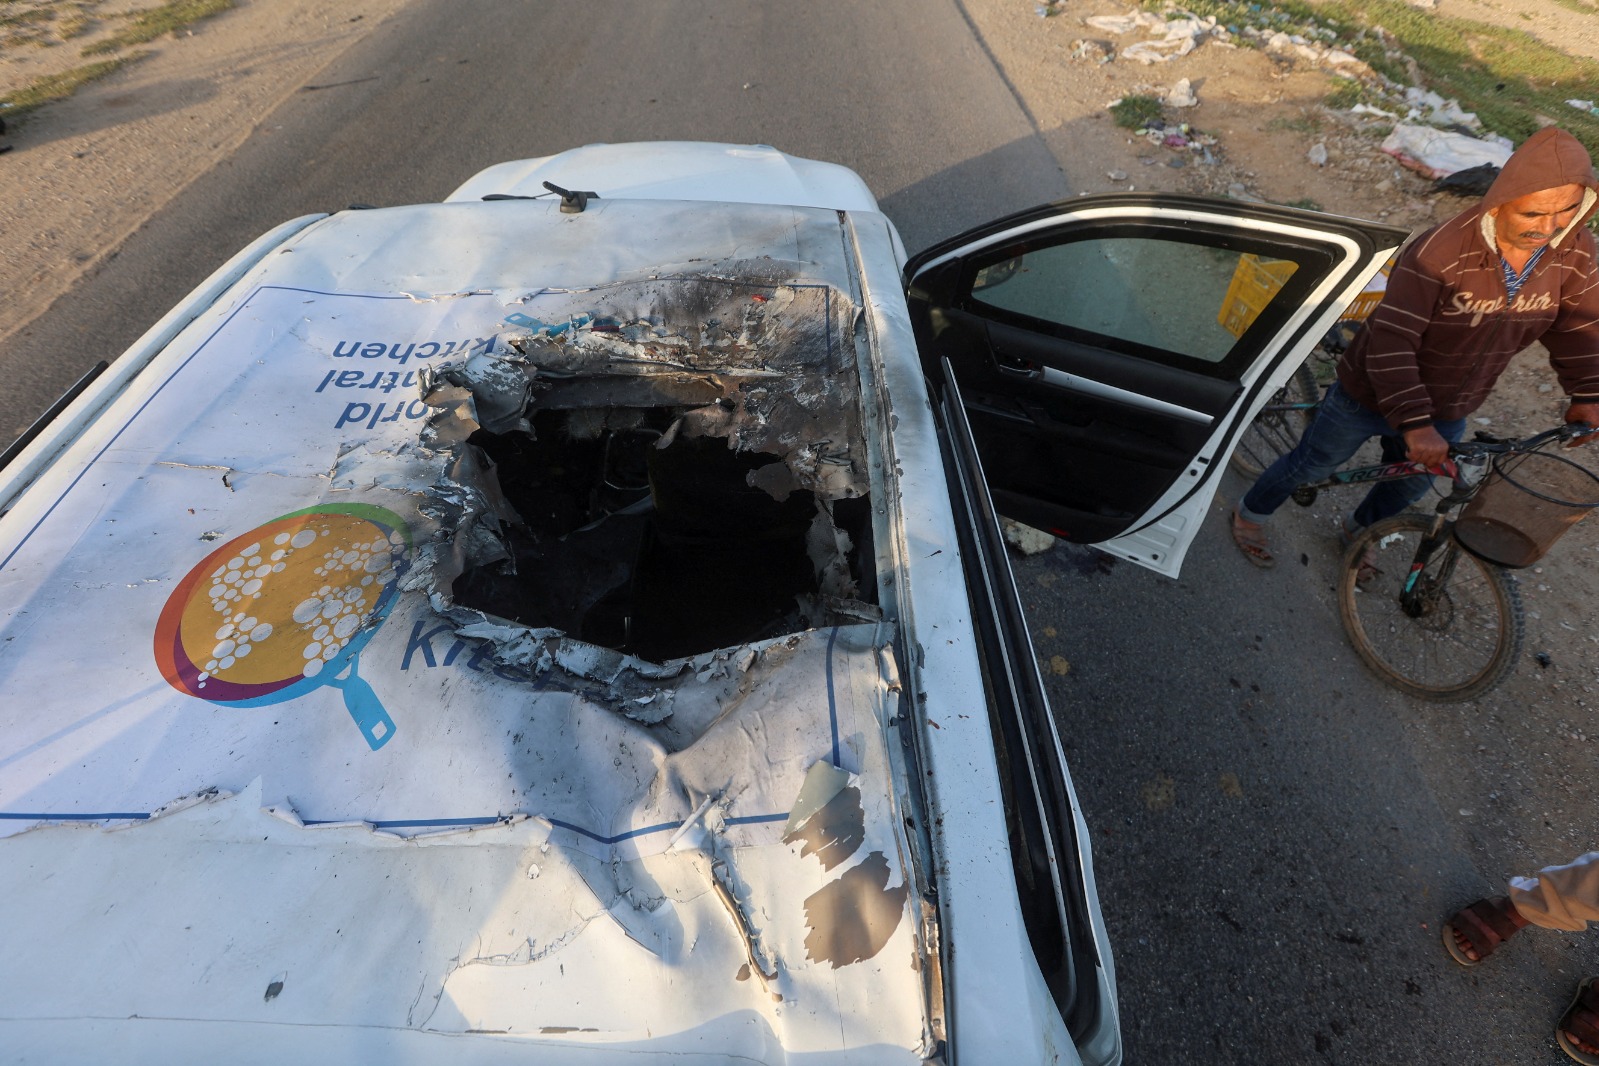 الفتحة التي أحدثتها الضربة الإسرائيلية في سقف السيارة دون تدميرها بالكامل تشير إلى استعمال ذخائر دقيقة موجهة بالليزر